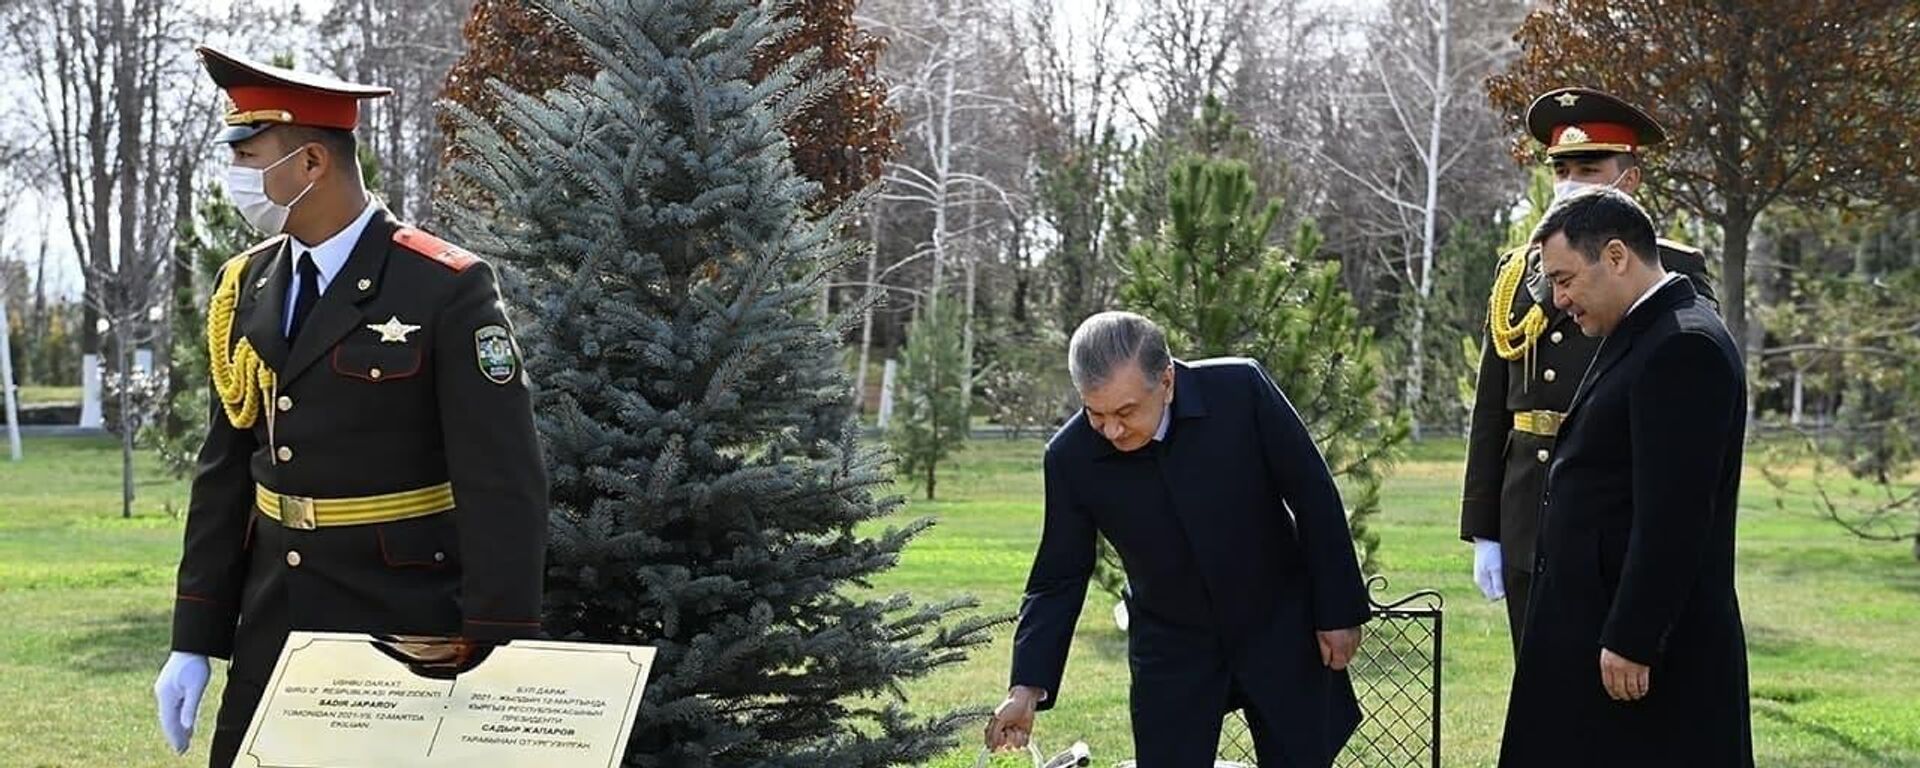 Шавкат Мирзиёев и Садыр Жапаров высадили дерево на Аллее почетных гостей в резиденции Куксарой - Sputnik Узбекистан, 1920, 12.03.2021